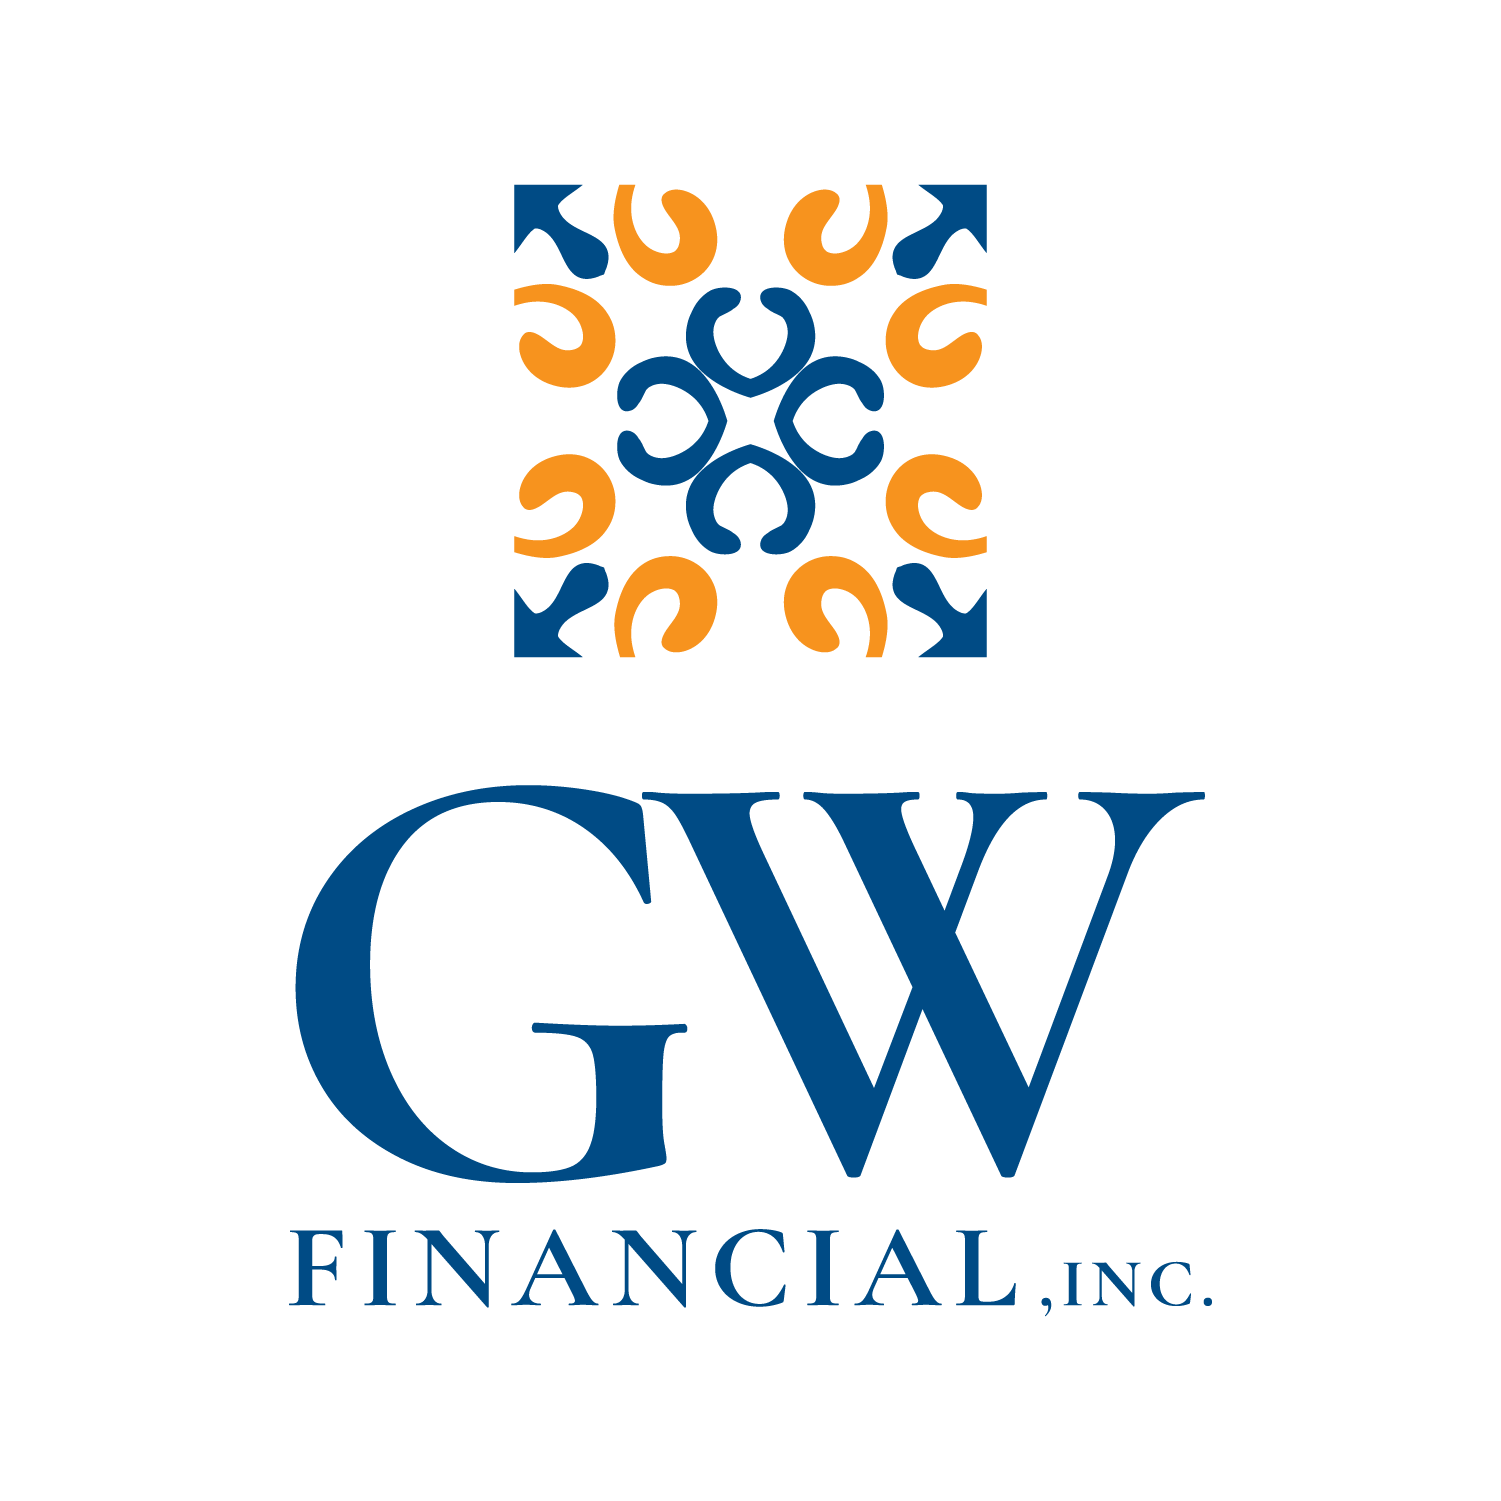 GW Financial, Inc.